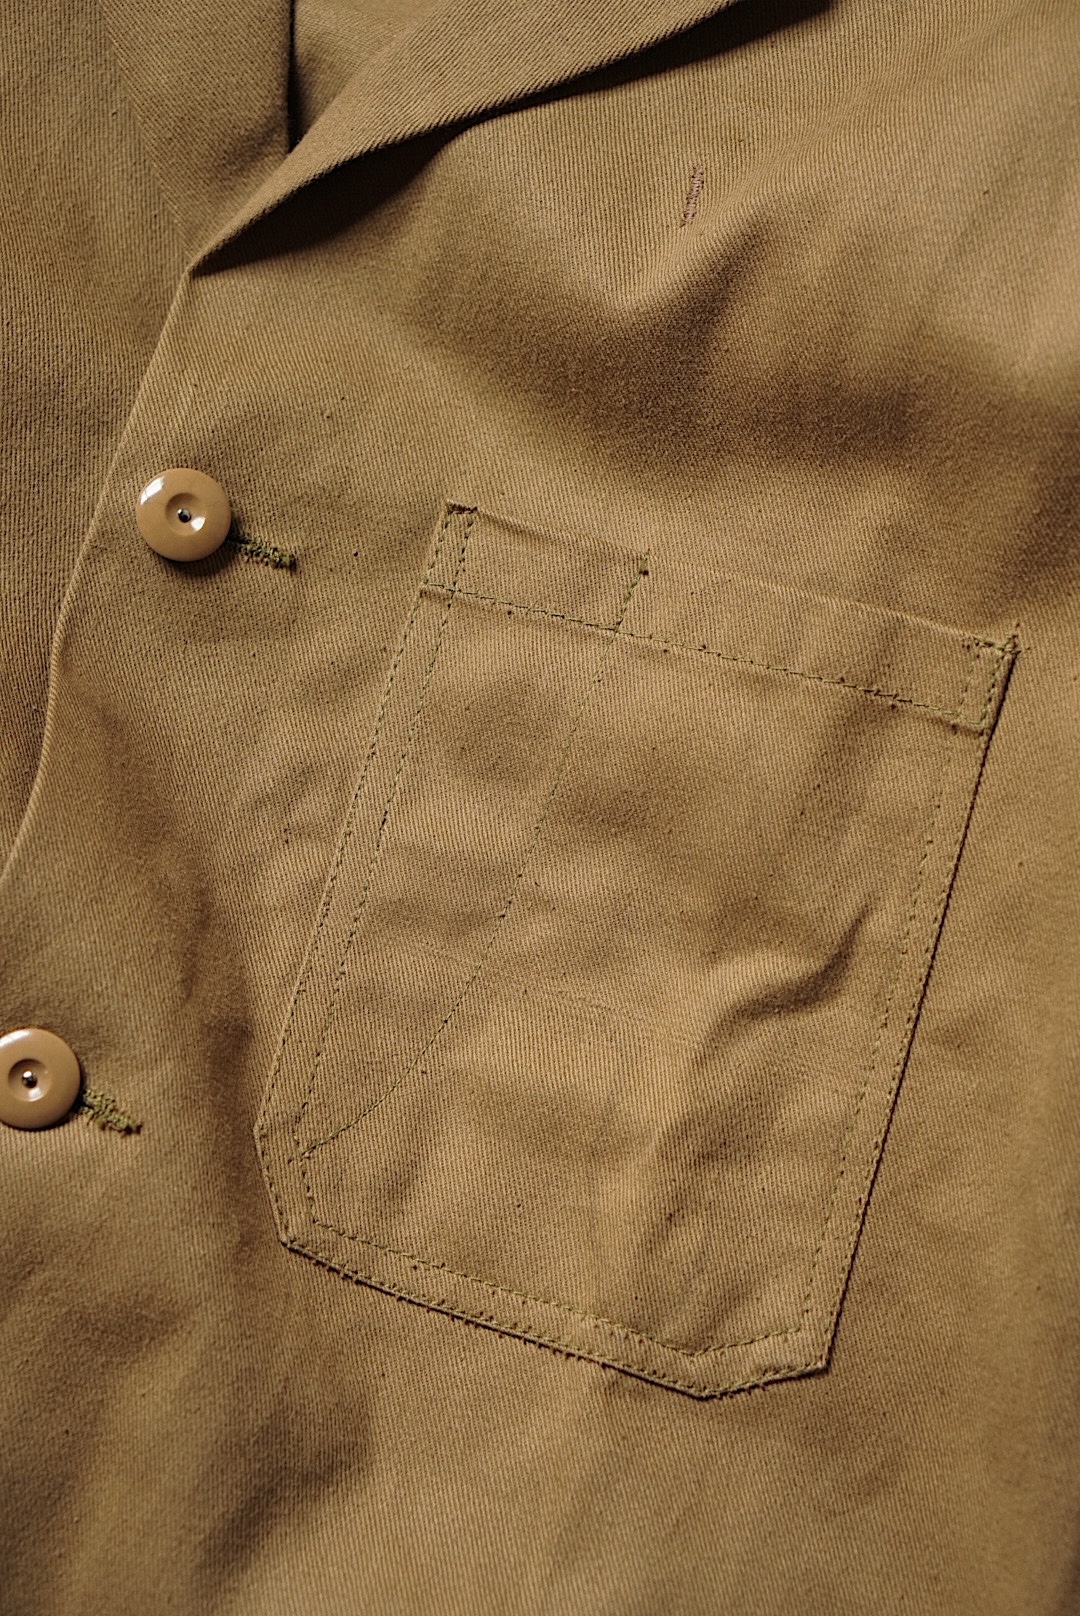 1960's British Work Jacket